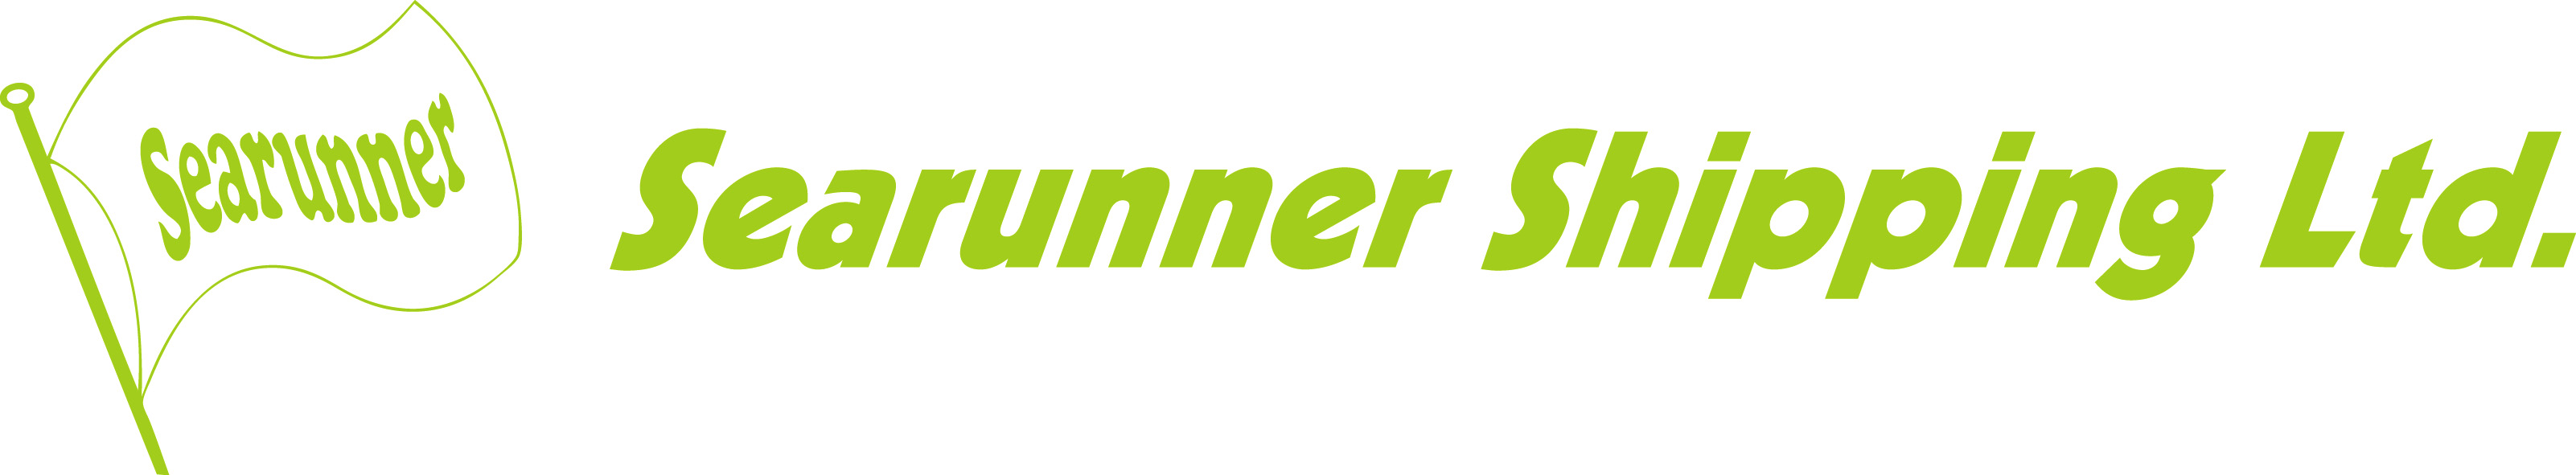 Logo Searunner